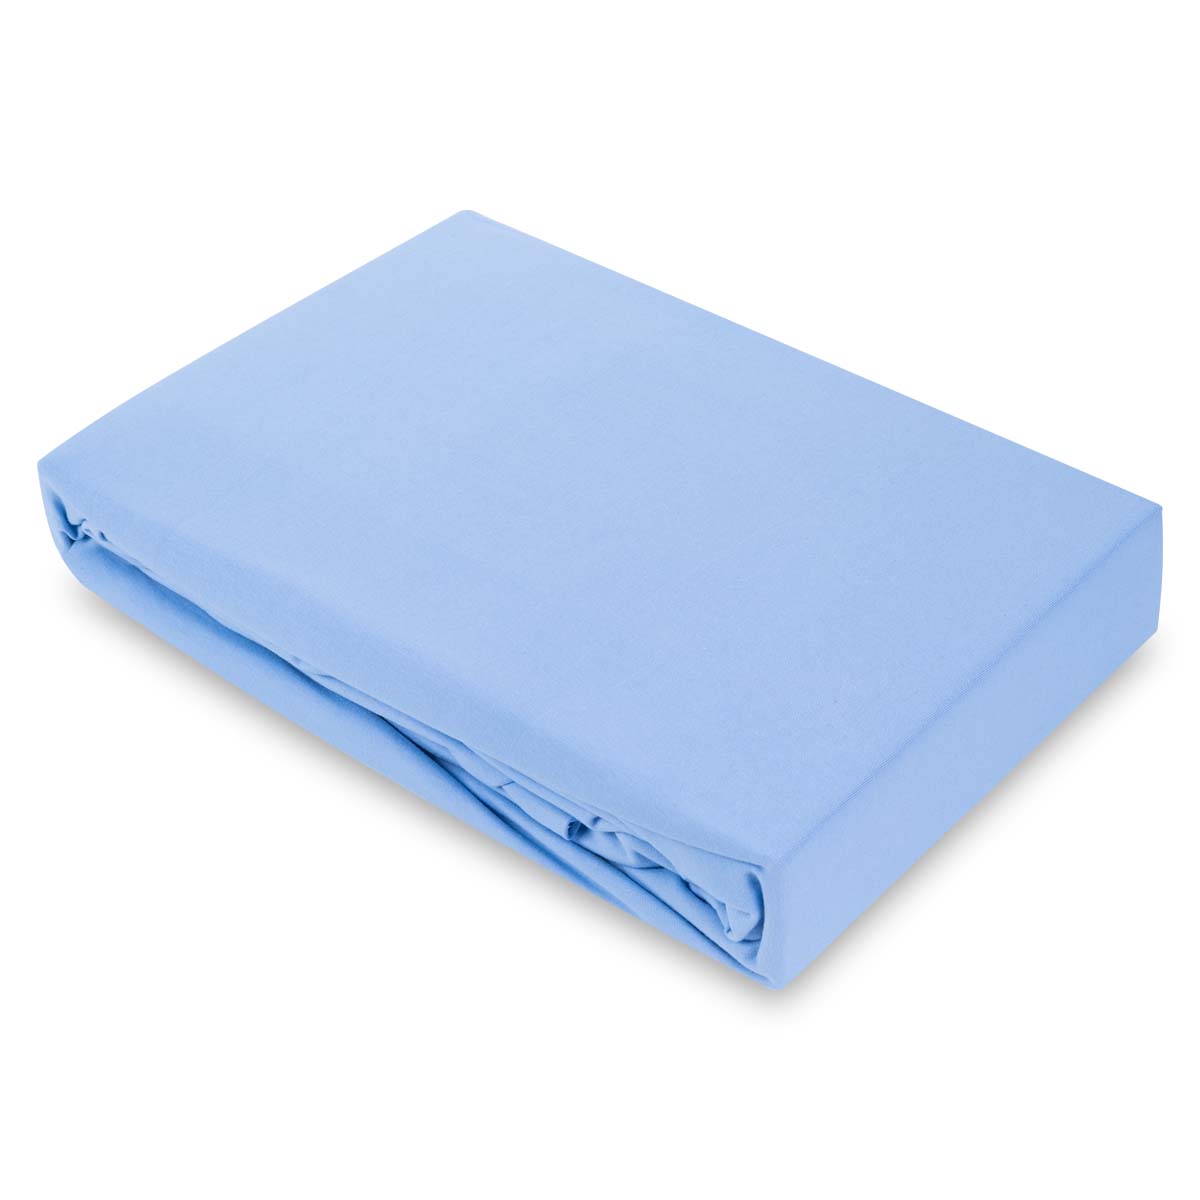 Простыня натяжная 1,5-спальная Pappel 160x220см, цвет светло-голубой Pappel 160220-35/Light Blue 21